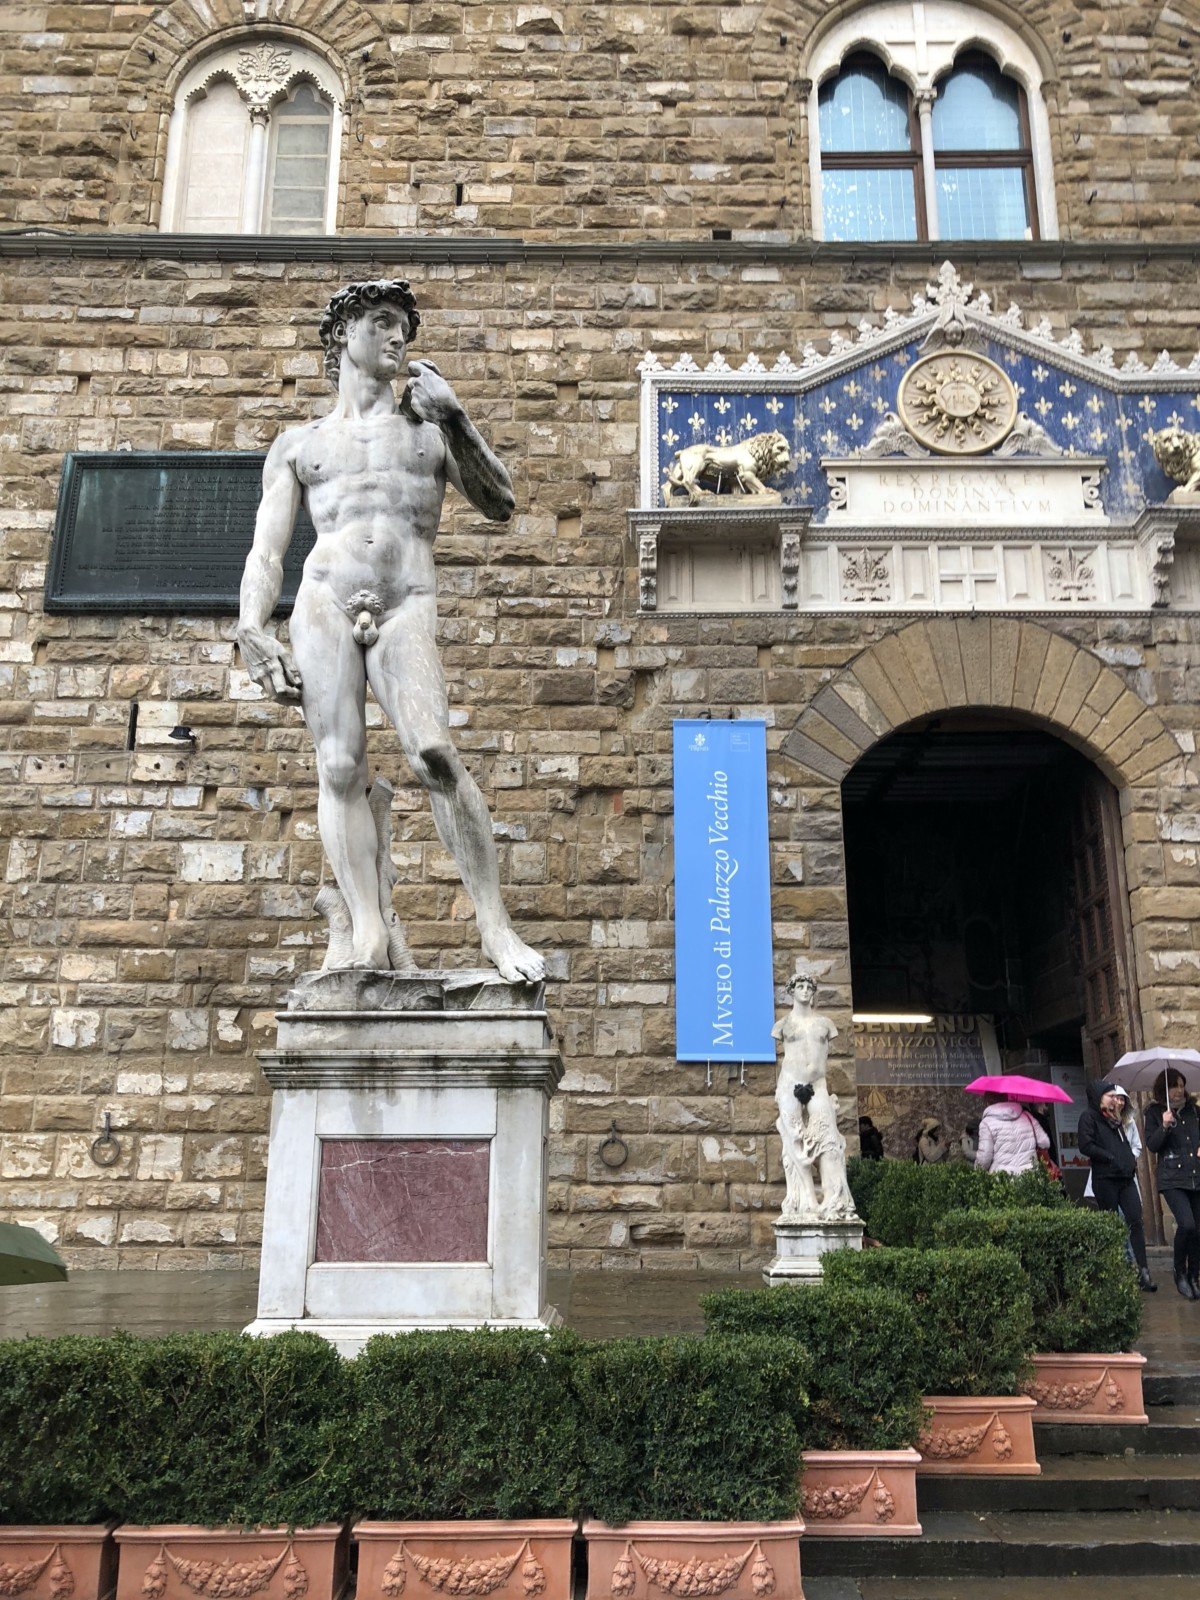 Piazza della Signoria with its copy of Michelangelo's David statue